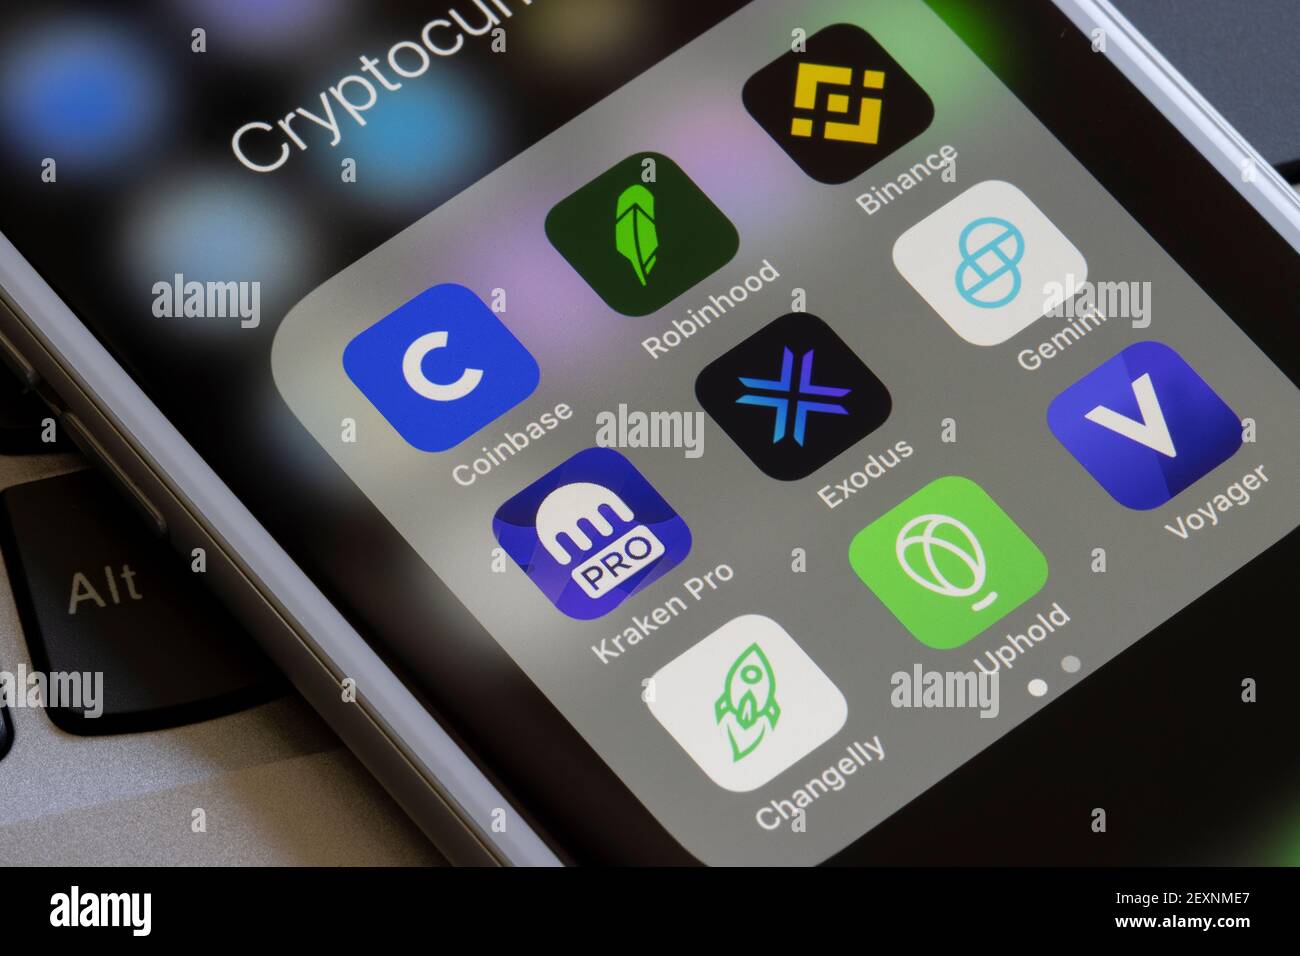 Verschiedene Kryptowährungs-Trading-Apps sind auf einem iPhone zu sehen - Coinbase, Robinhood, Binance, Kraken Pro, Exodus, Zwillinge, Changelly, Prestun und Voyager. Stockfoto